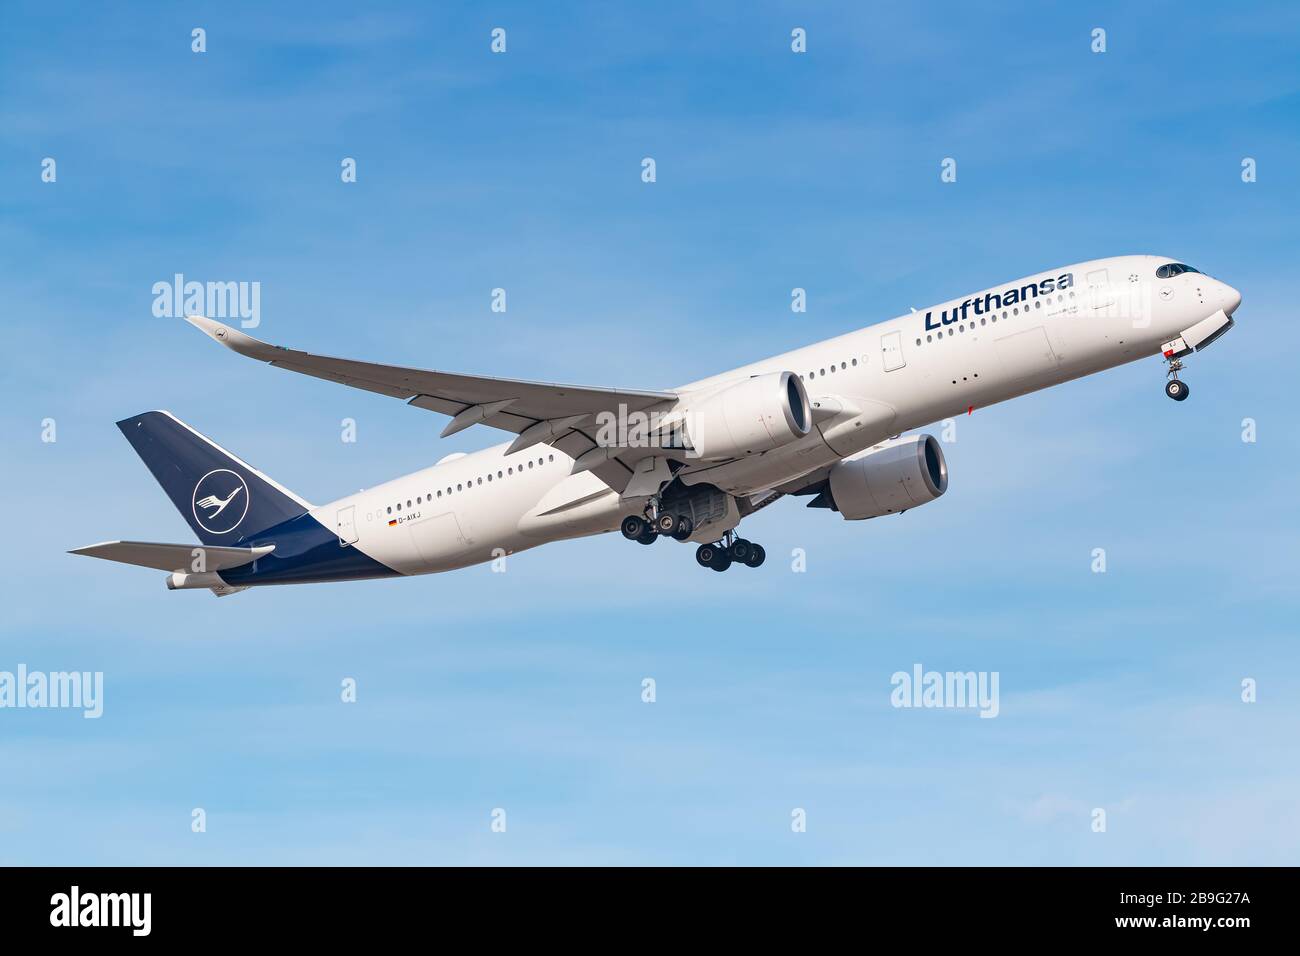 München, Deutschland - 15. Februar 2020: Lufthansa Airbus A350 Flugzeug am Münchner Flughafen (MUC) in Deutschland. Airbus ist ein Flugzeughersteller aus Toulou Stockfoto